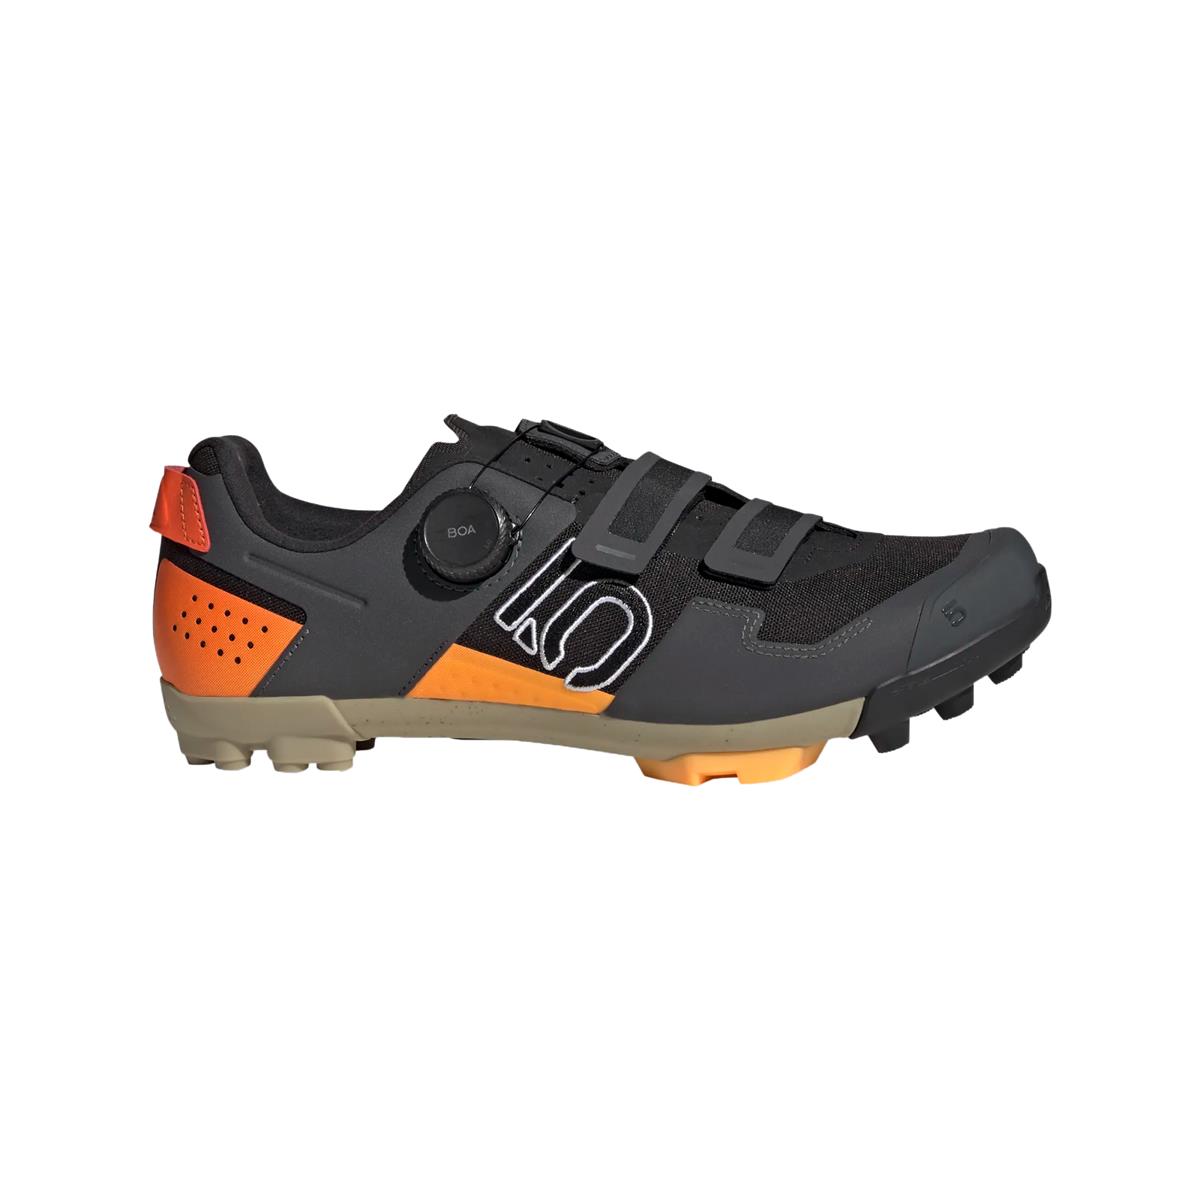 Clip 5.10 Kestrel Boa MTB Shoes Black/Orange Size 42.5